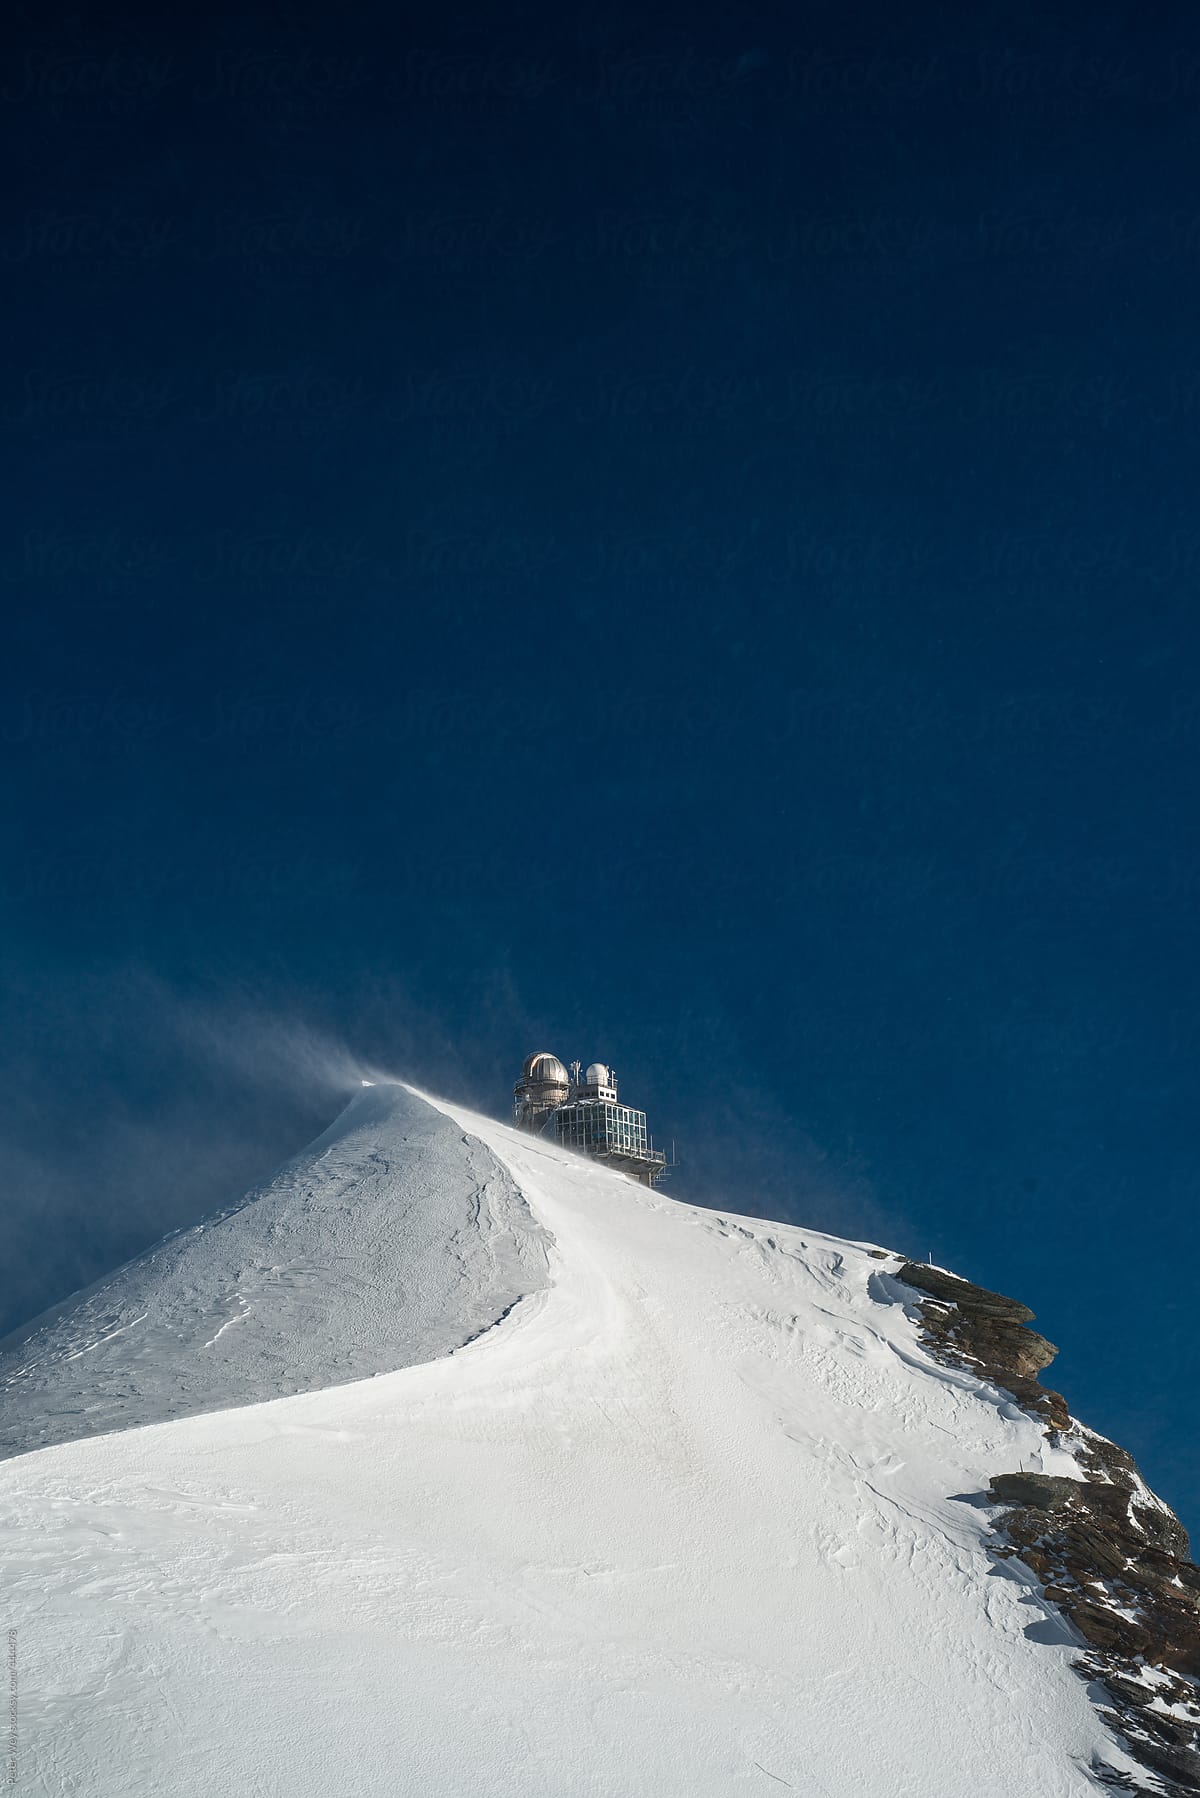 Jungfraujoch mountain peak